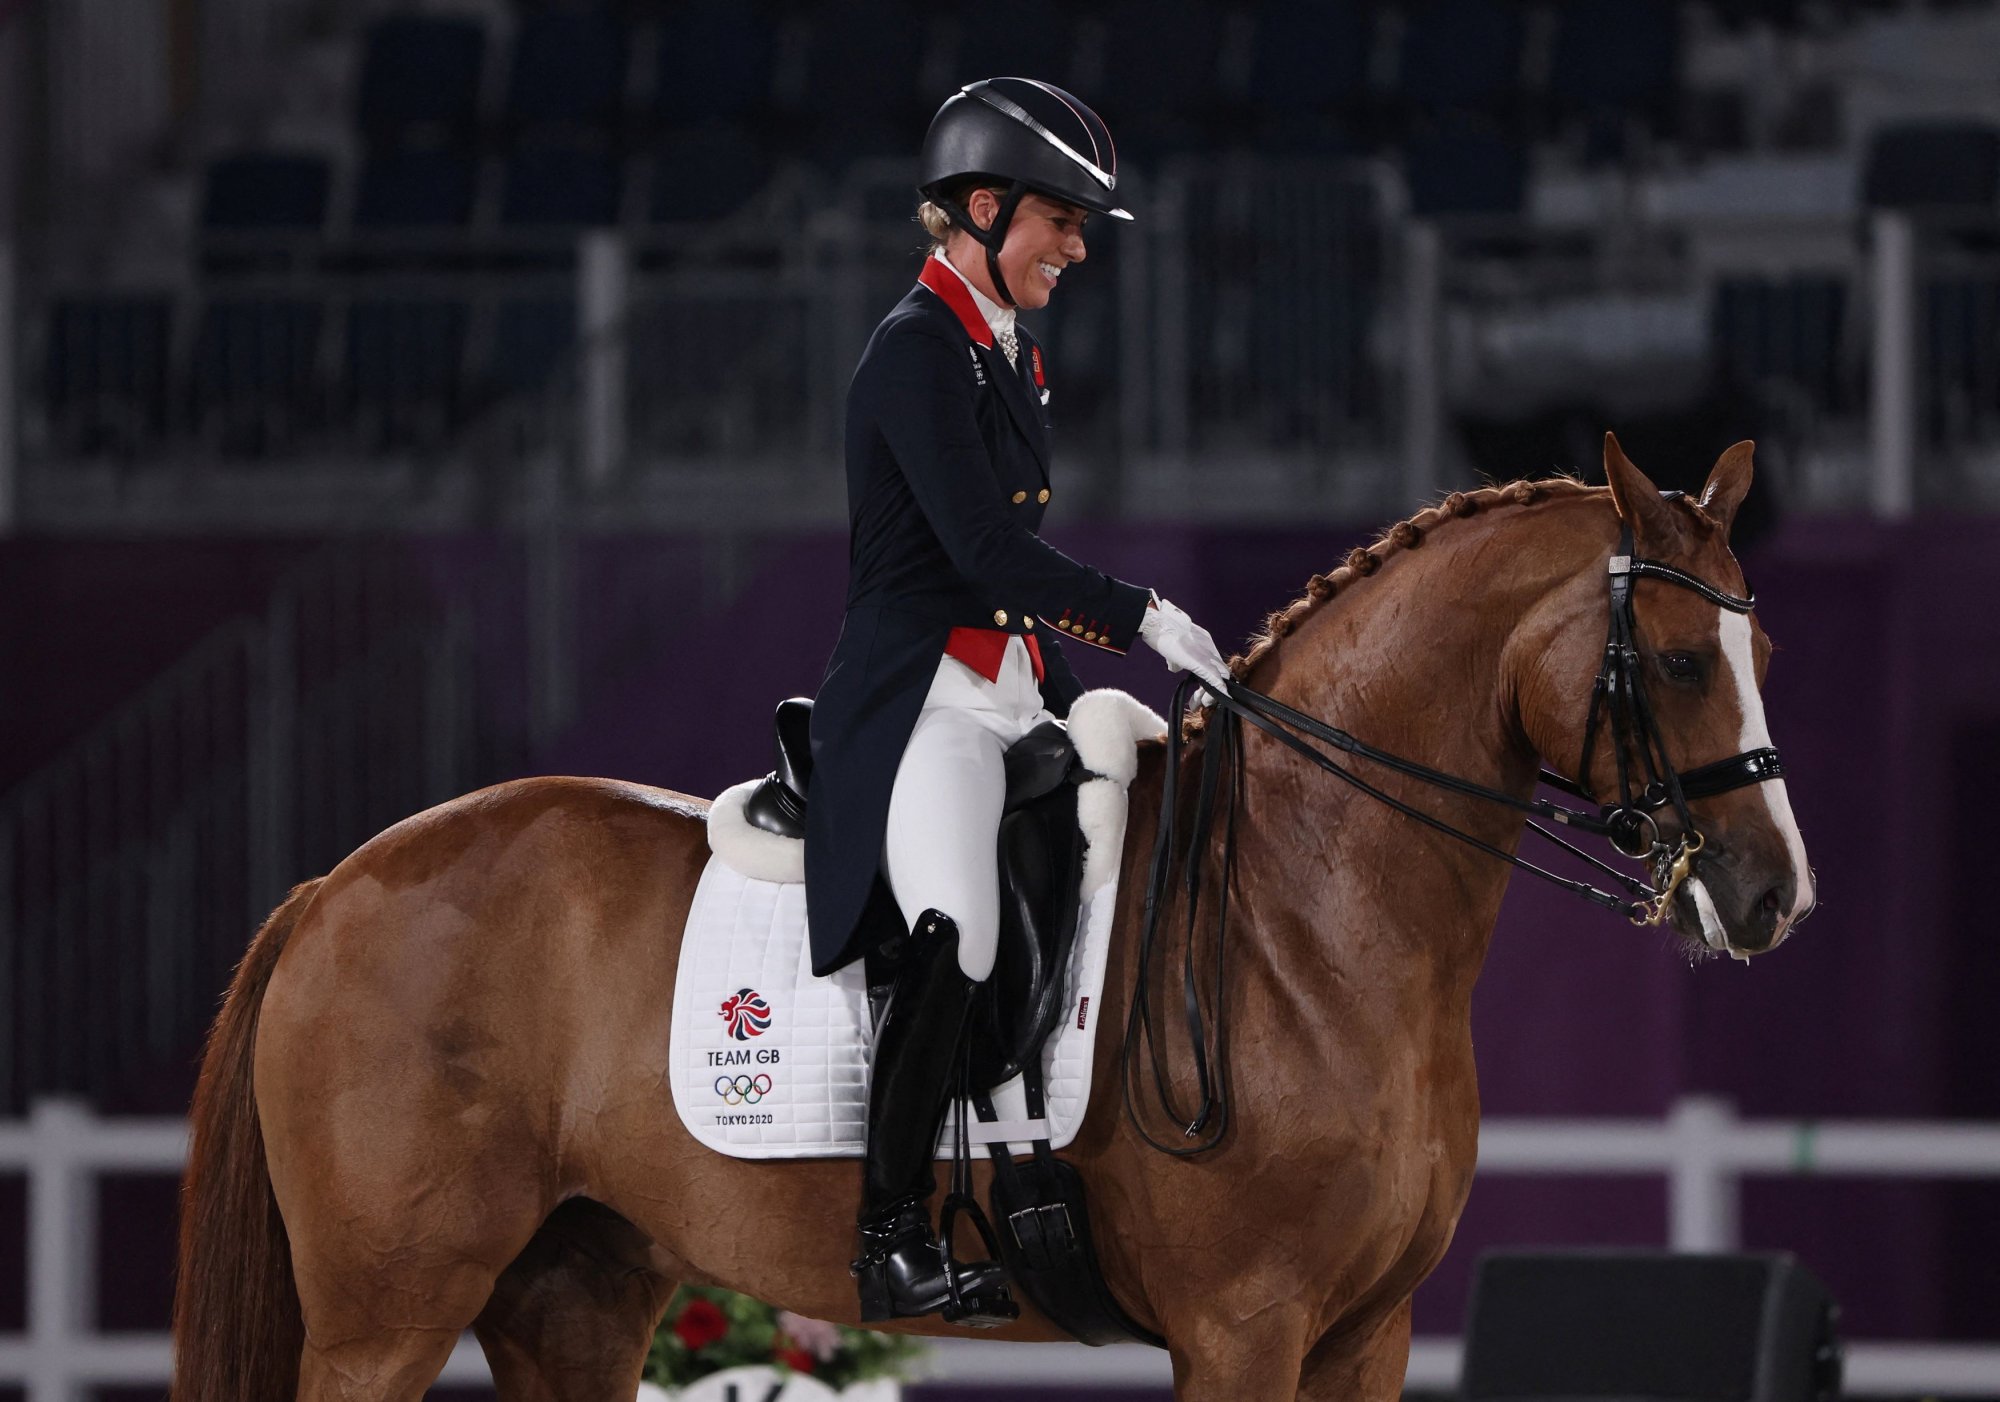 Σάλος με «χρυσή» Ολυμπιονίκη ιππασίας που κακοποιούσε το άλογό της - Αποκλείστηκε από τους Ολυμπιακούς Αγώνες